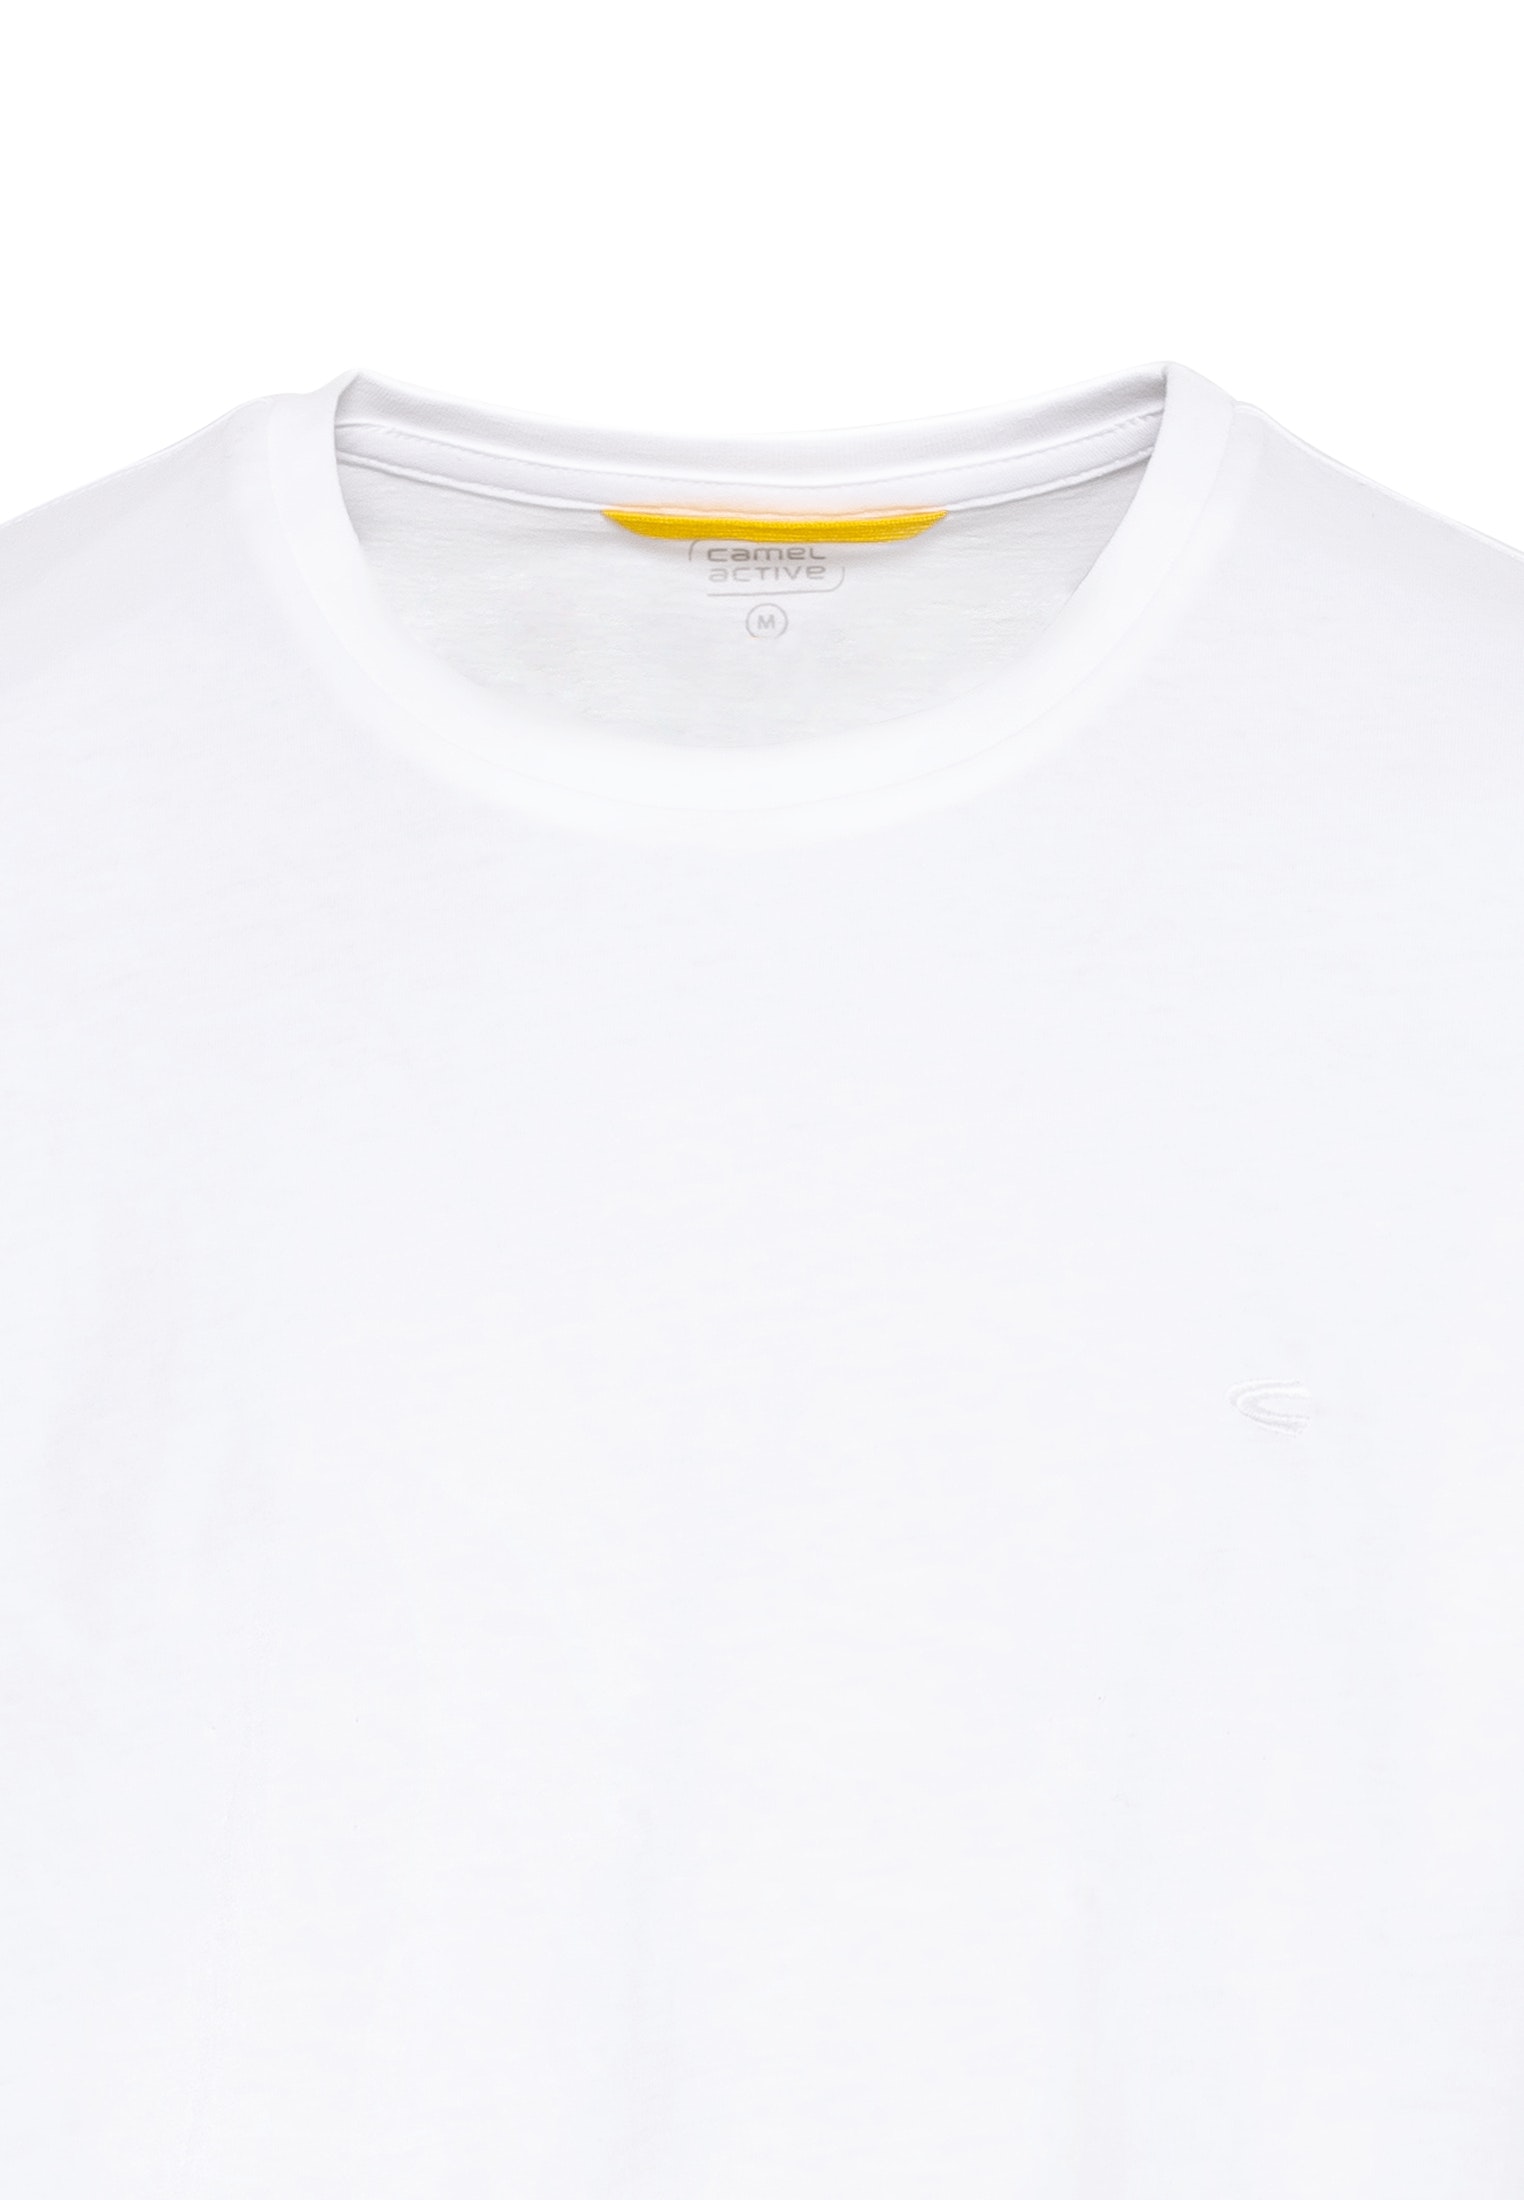 Kurzarm Basic T-Shirt aus reiner Baumwolle